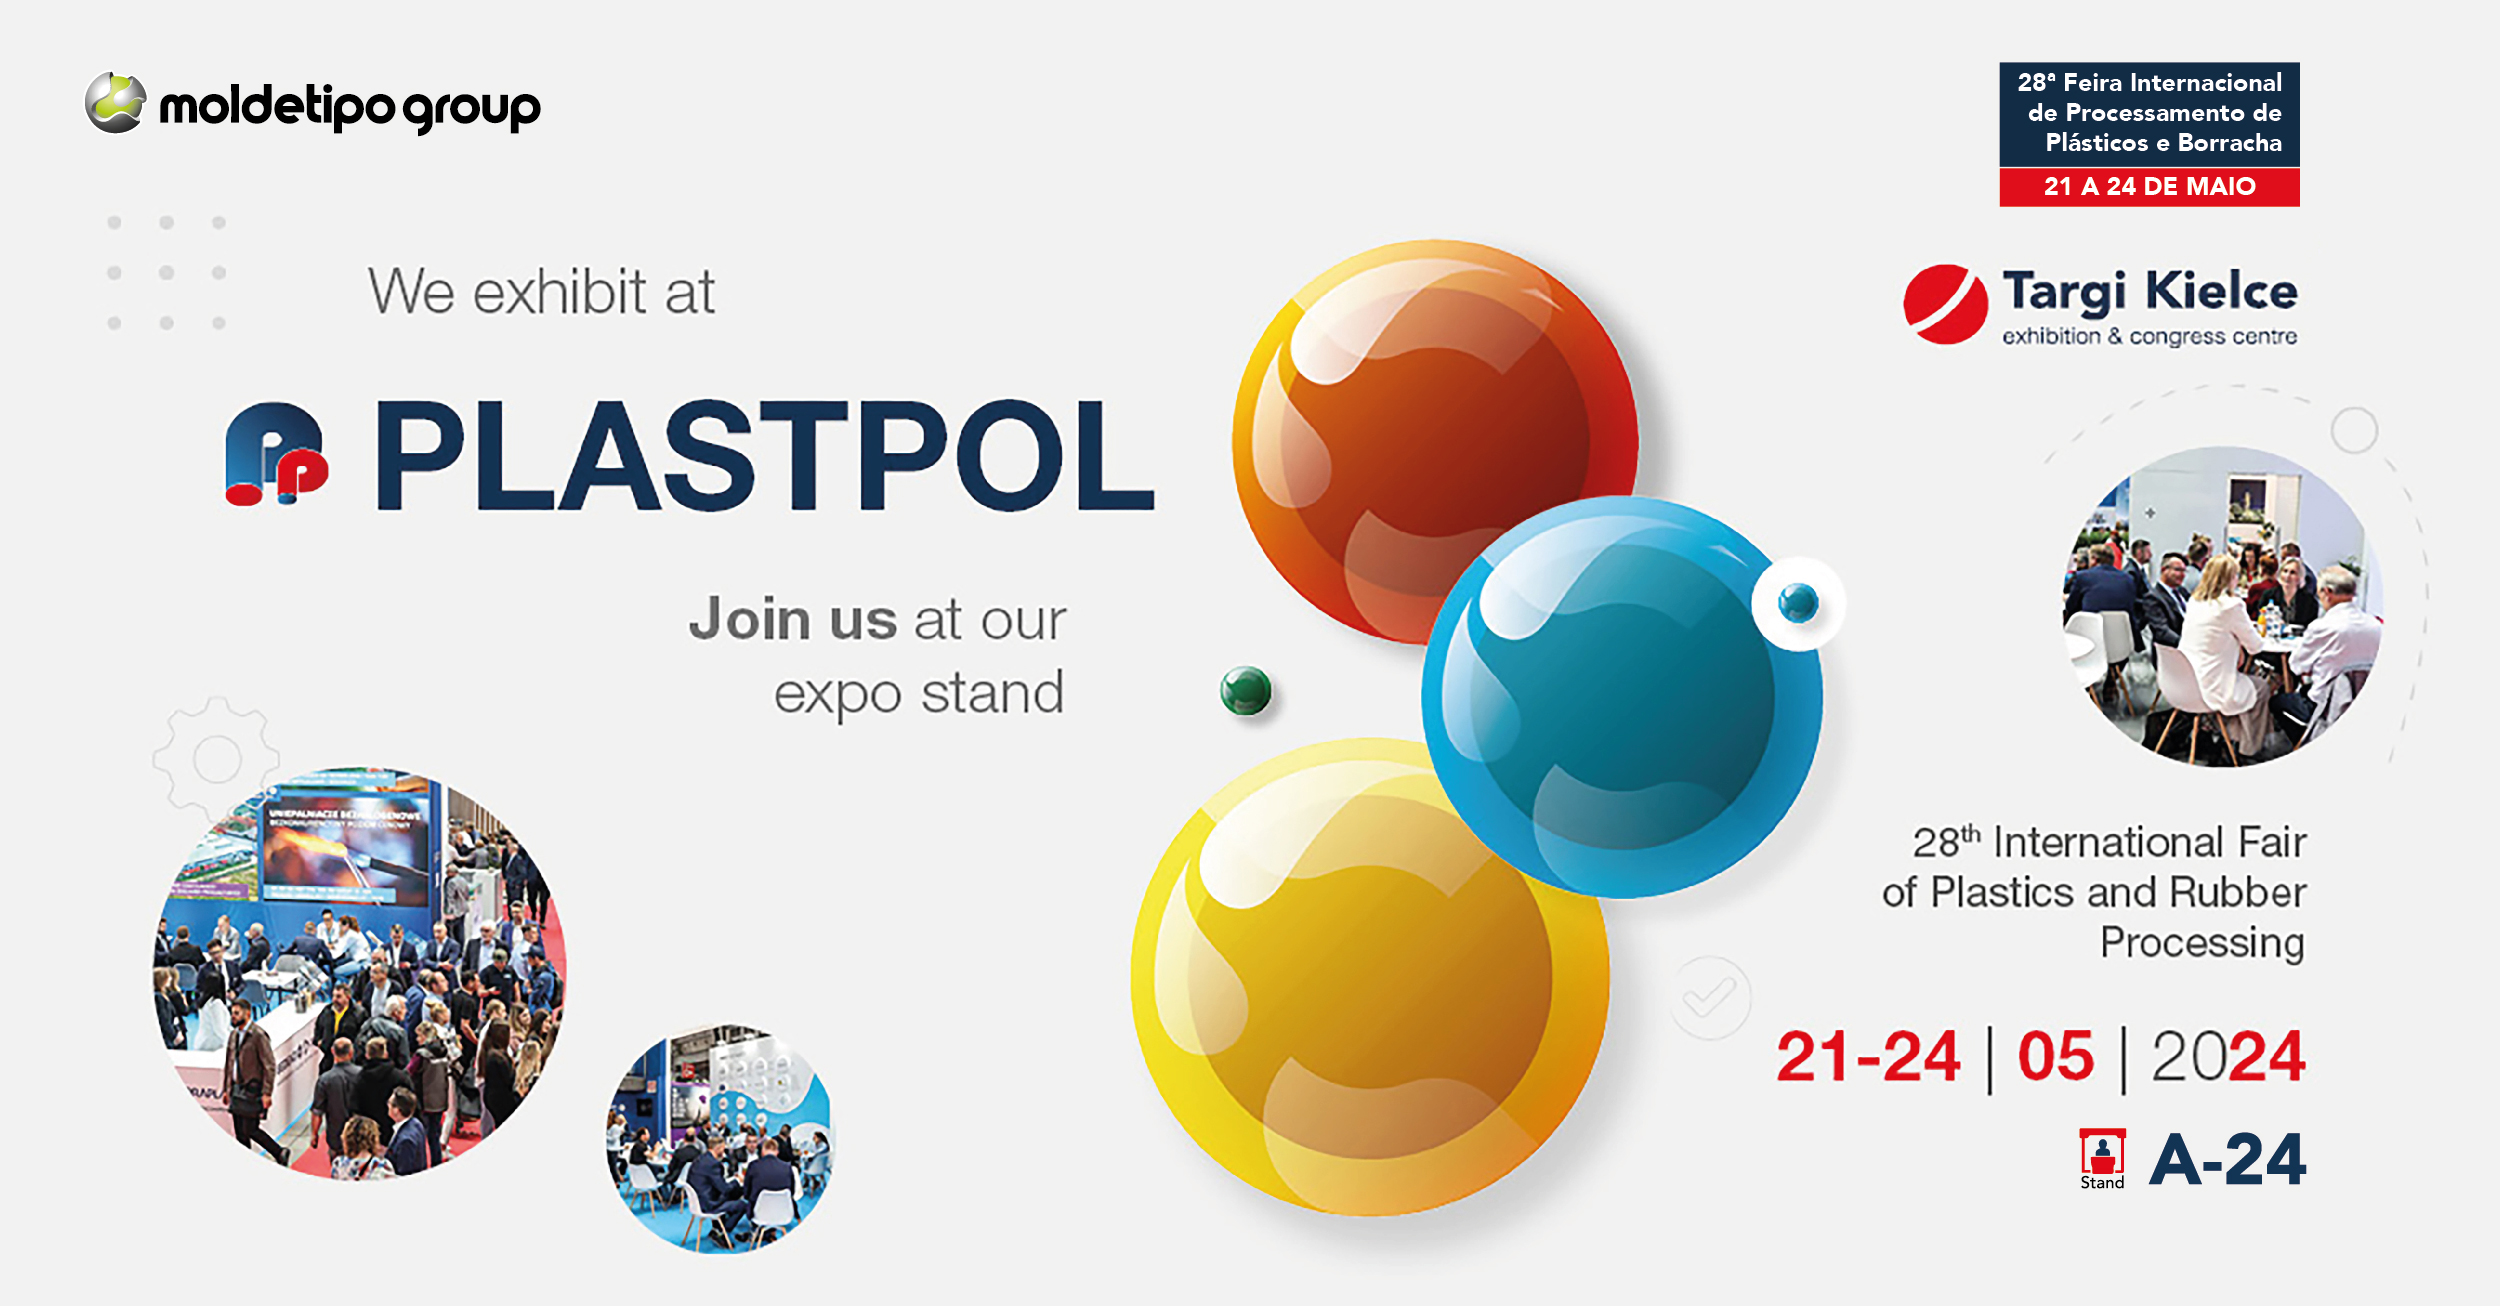 De 21 a 24 de Maio a MoldetipoGroup irá marcar presença na Plastpol - 28º Feira Internacional de Processamento de Plástico e Borracha, na Polónia.